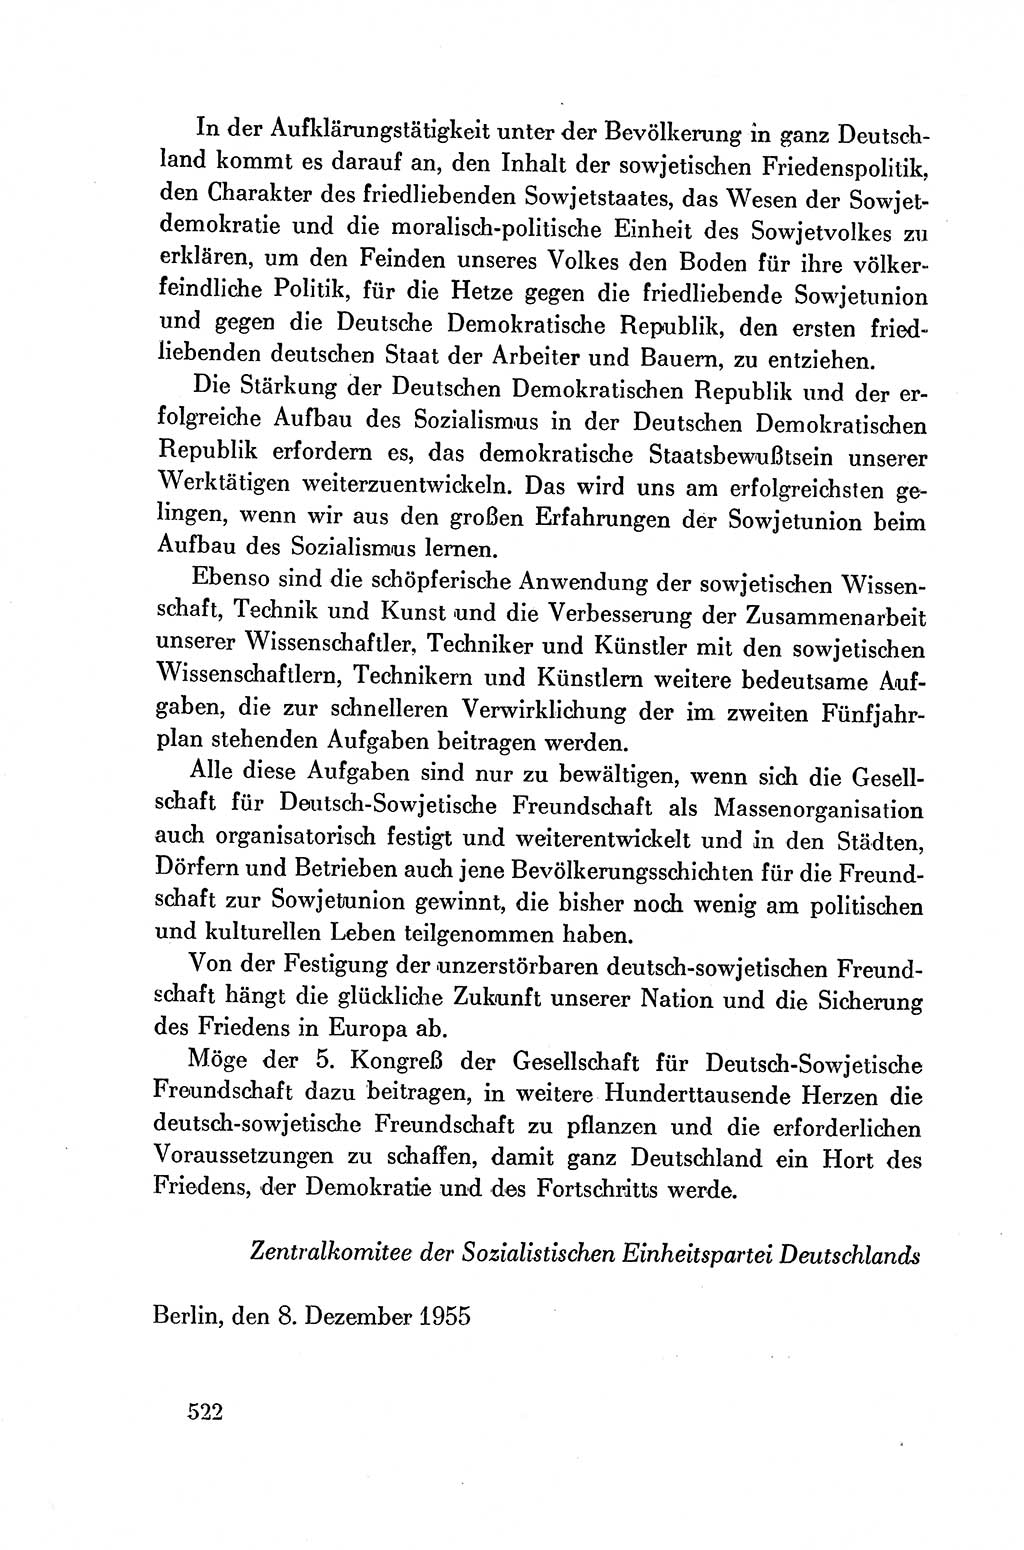 Dokumente der Sozialistischen Einheitspartei Deutschlands (SED) [Deutsche Demokratische Republik (DDR)] 1954-1955, Seite 522 (Dok. SED DDR 1954-1955, S. 522)